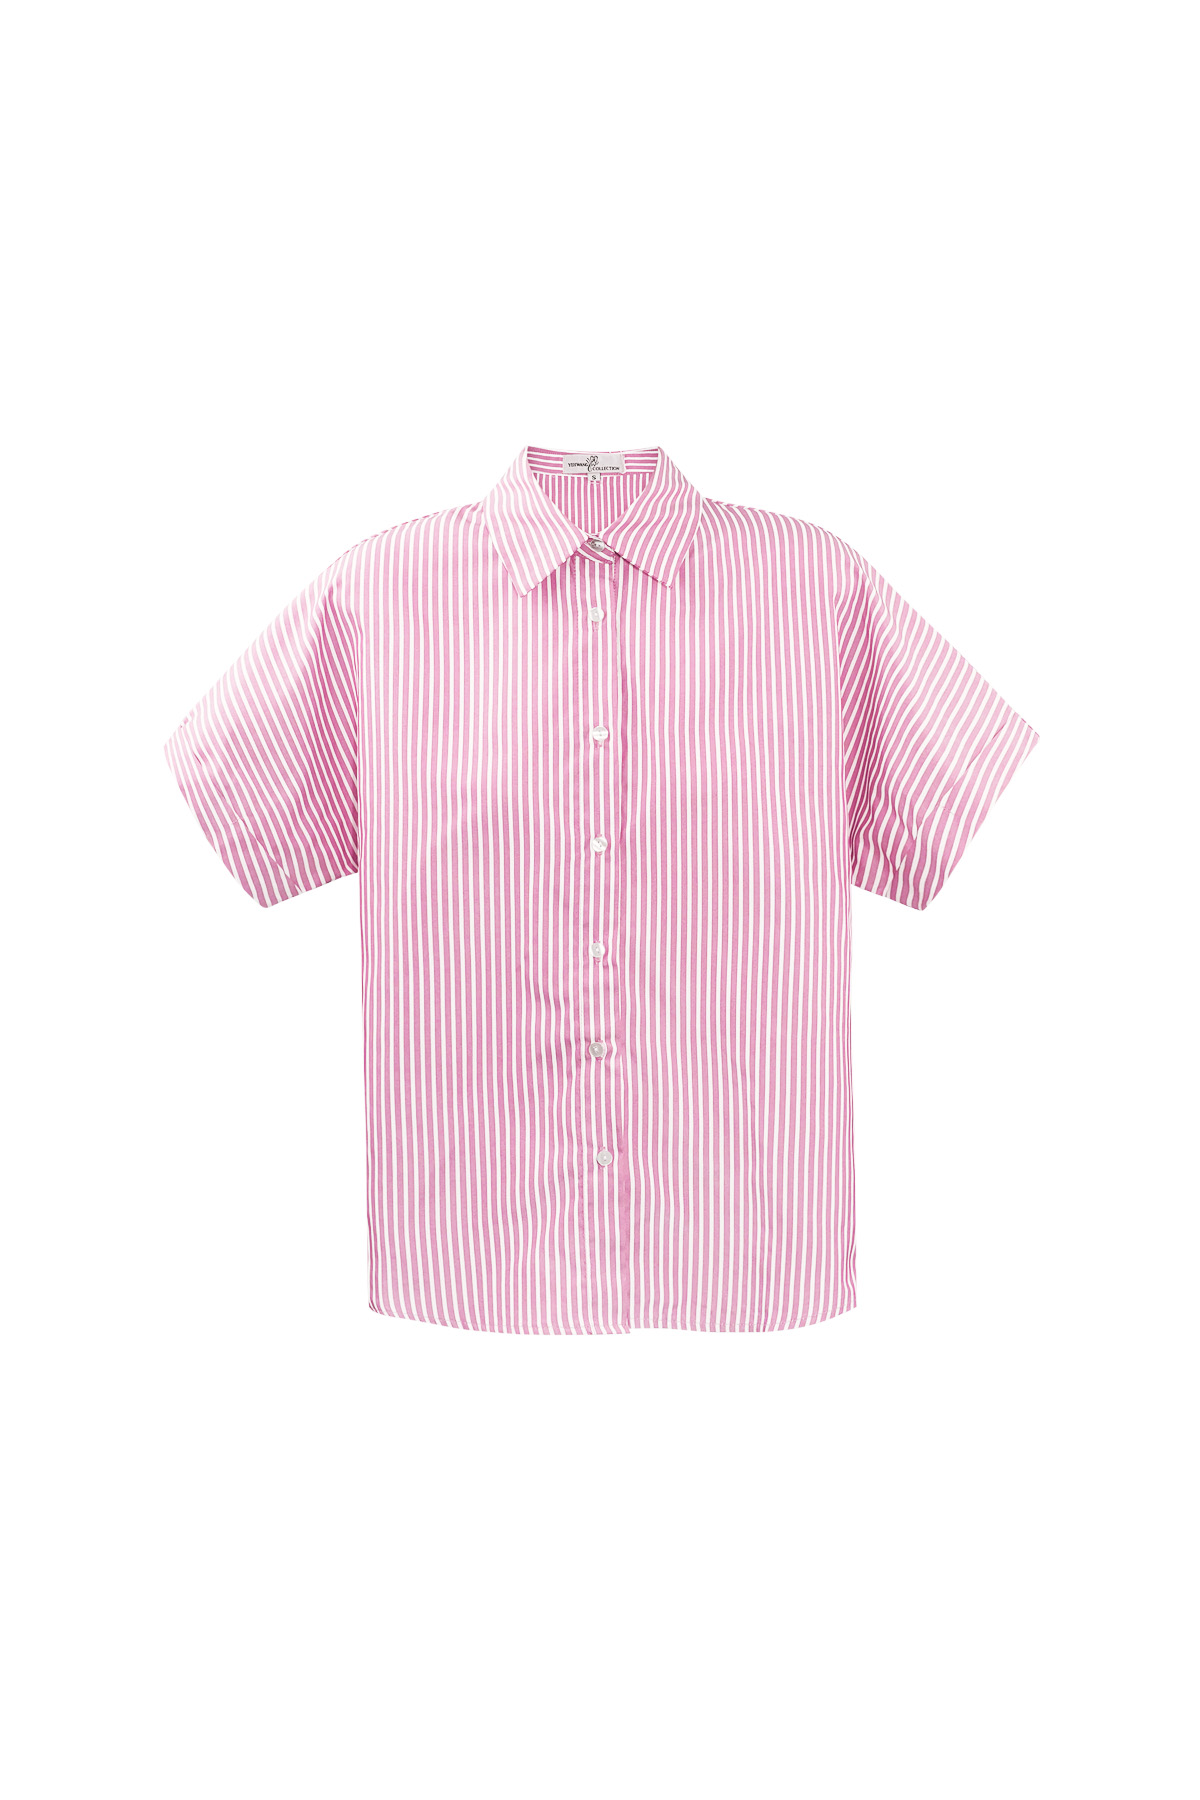 Gestreifte Bluse mit kurzen Ärmeln – rosa 